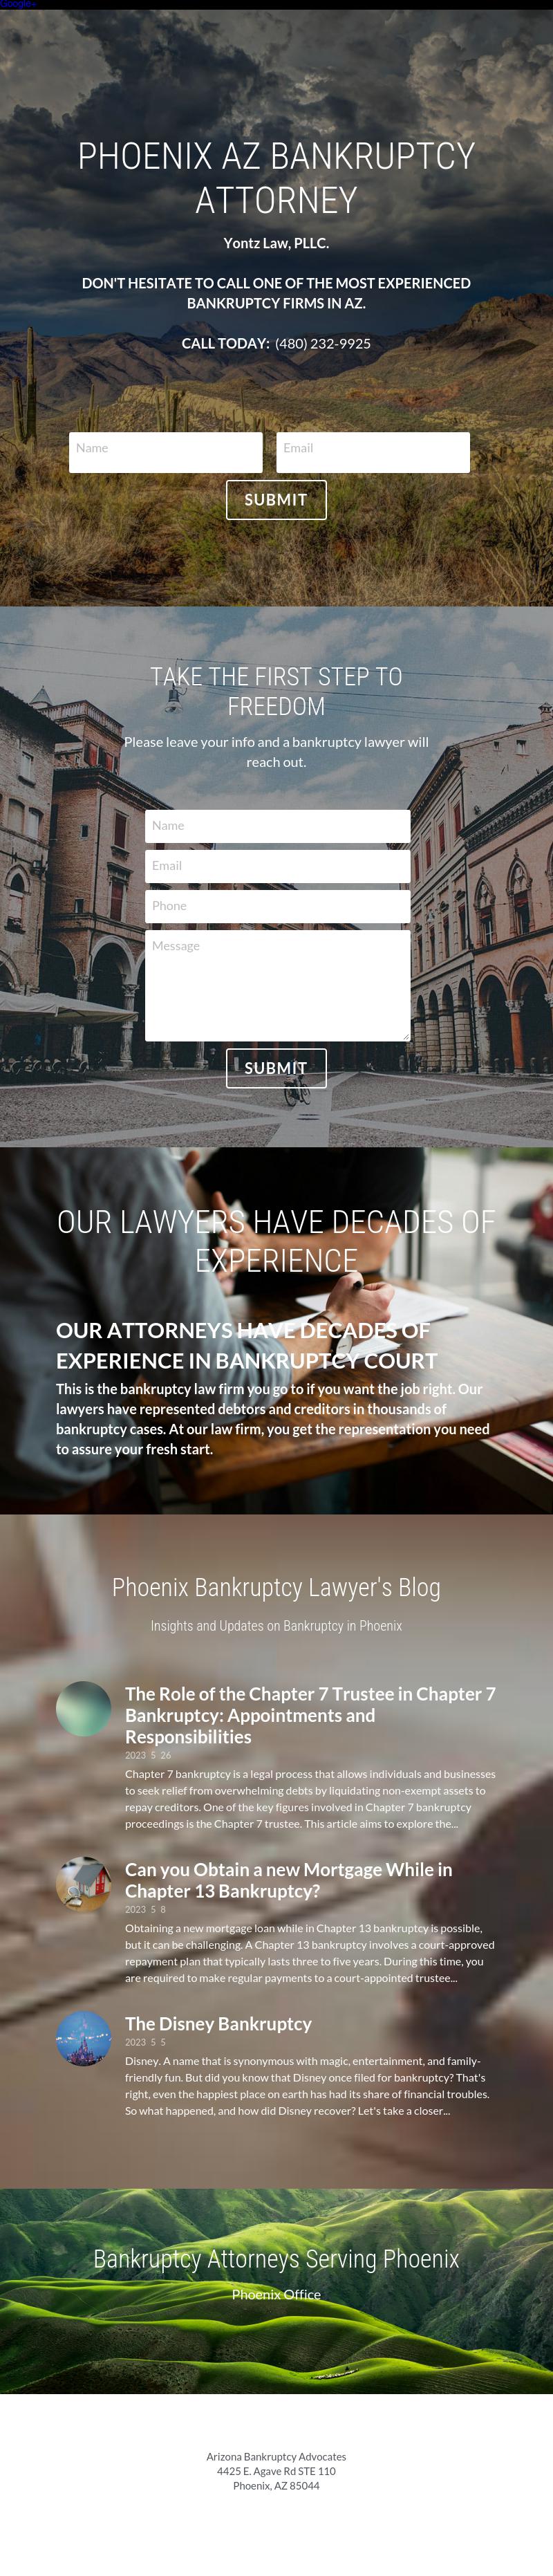 Yontz Law, PLLC. - Phoenix AZ Lawyers